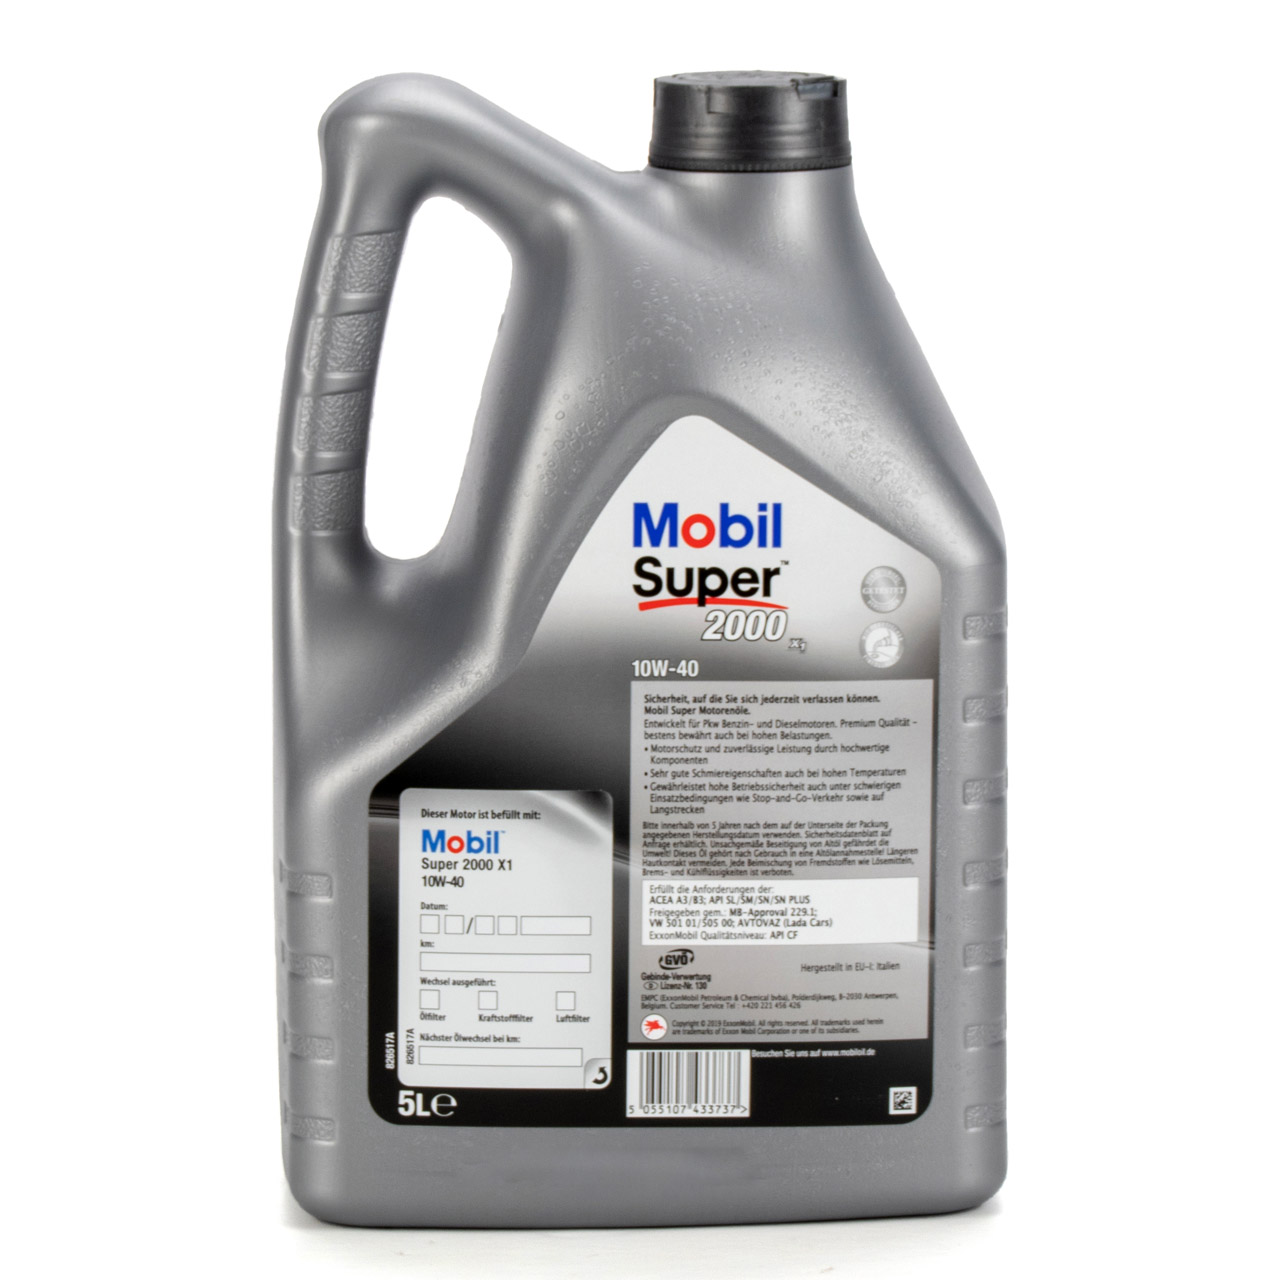 Mobil SUPER 2000 X1 10W40 Super Premium Motoröl Öl VW 501.01/505.00 - 5L 5 Liter